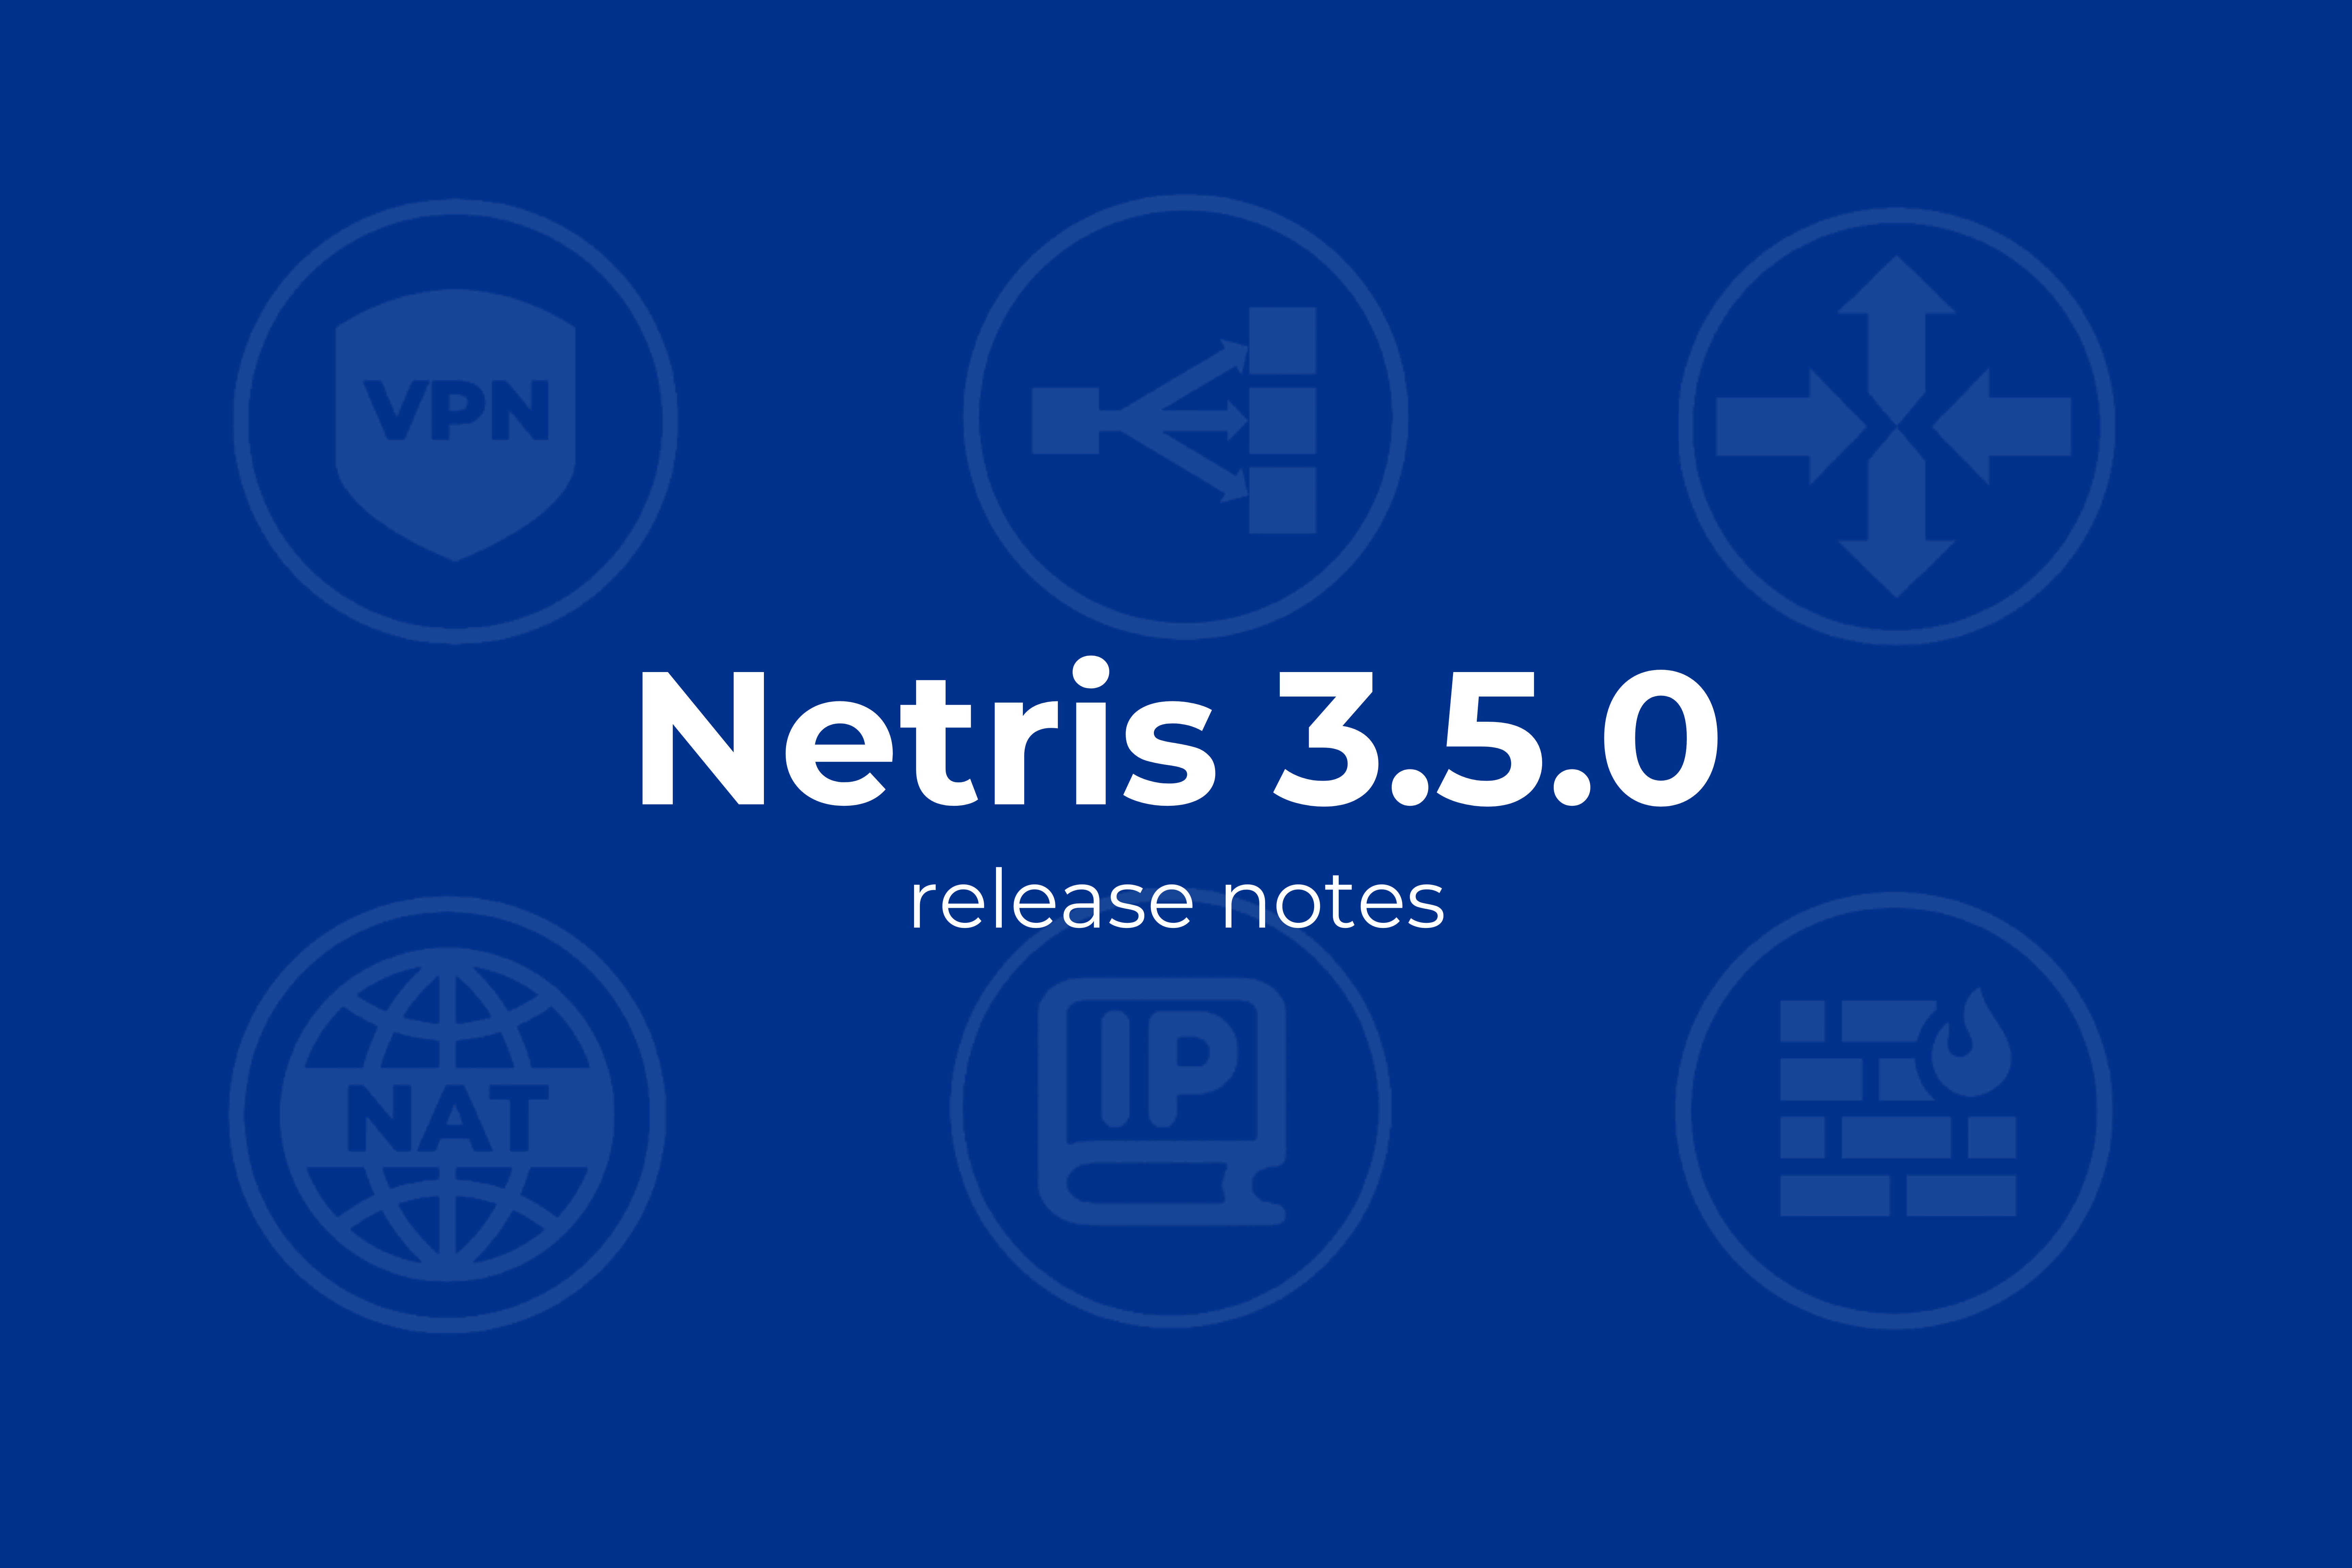 Netris Release Notes 3.5.0